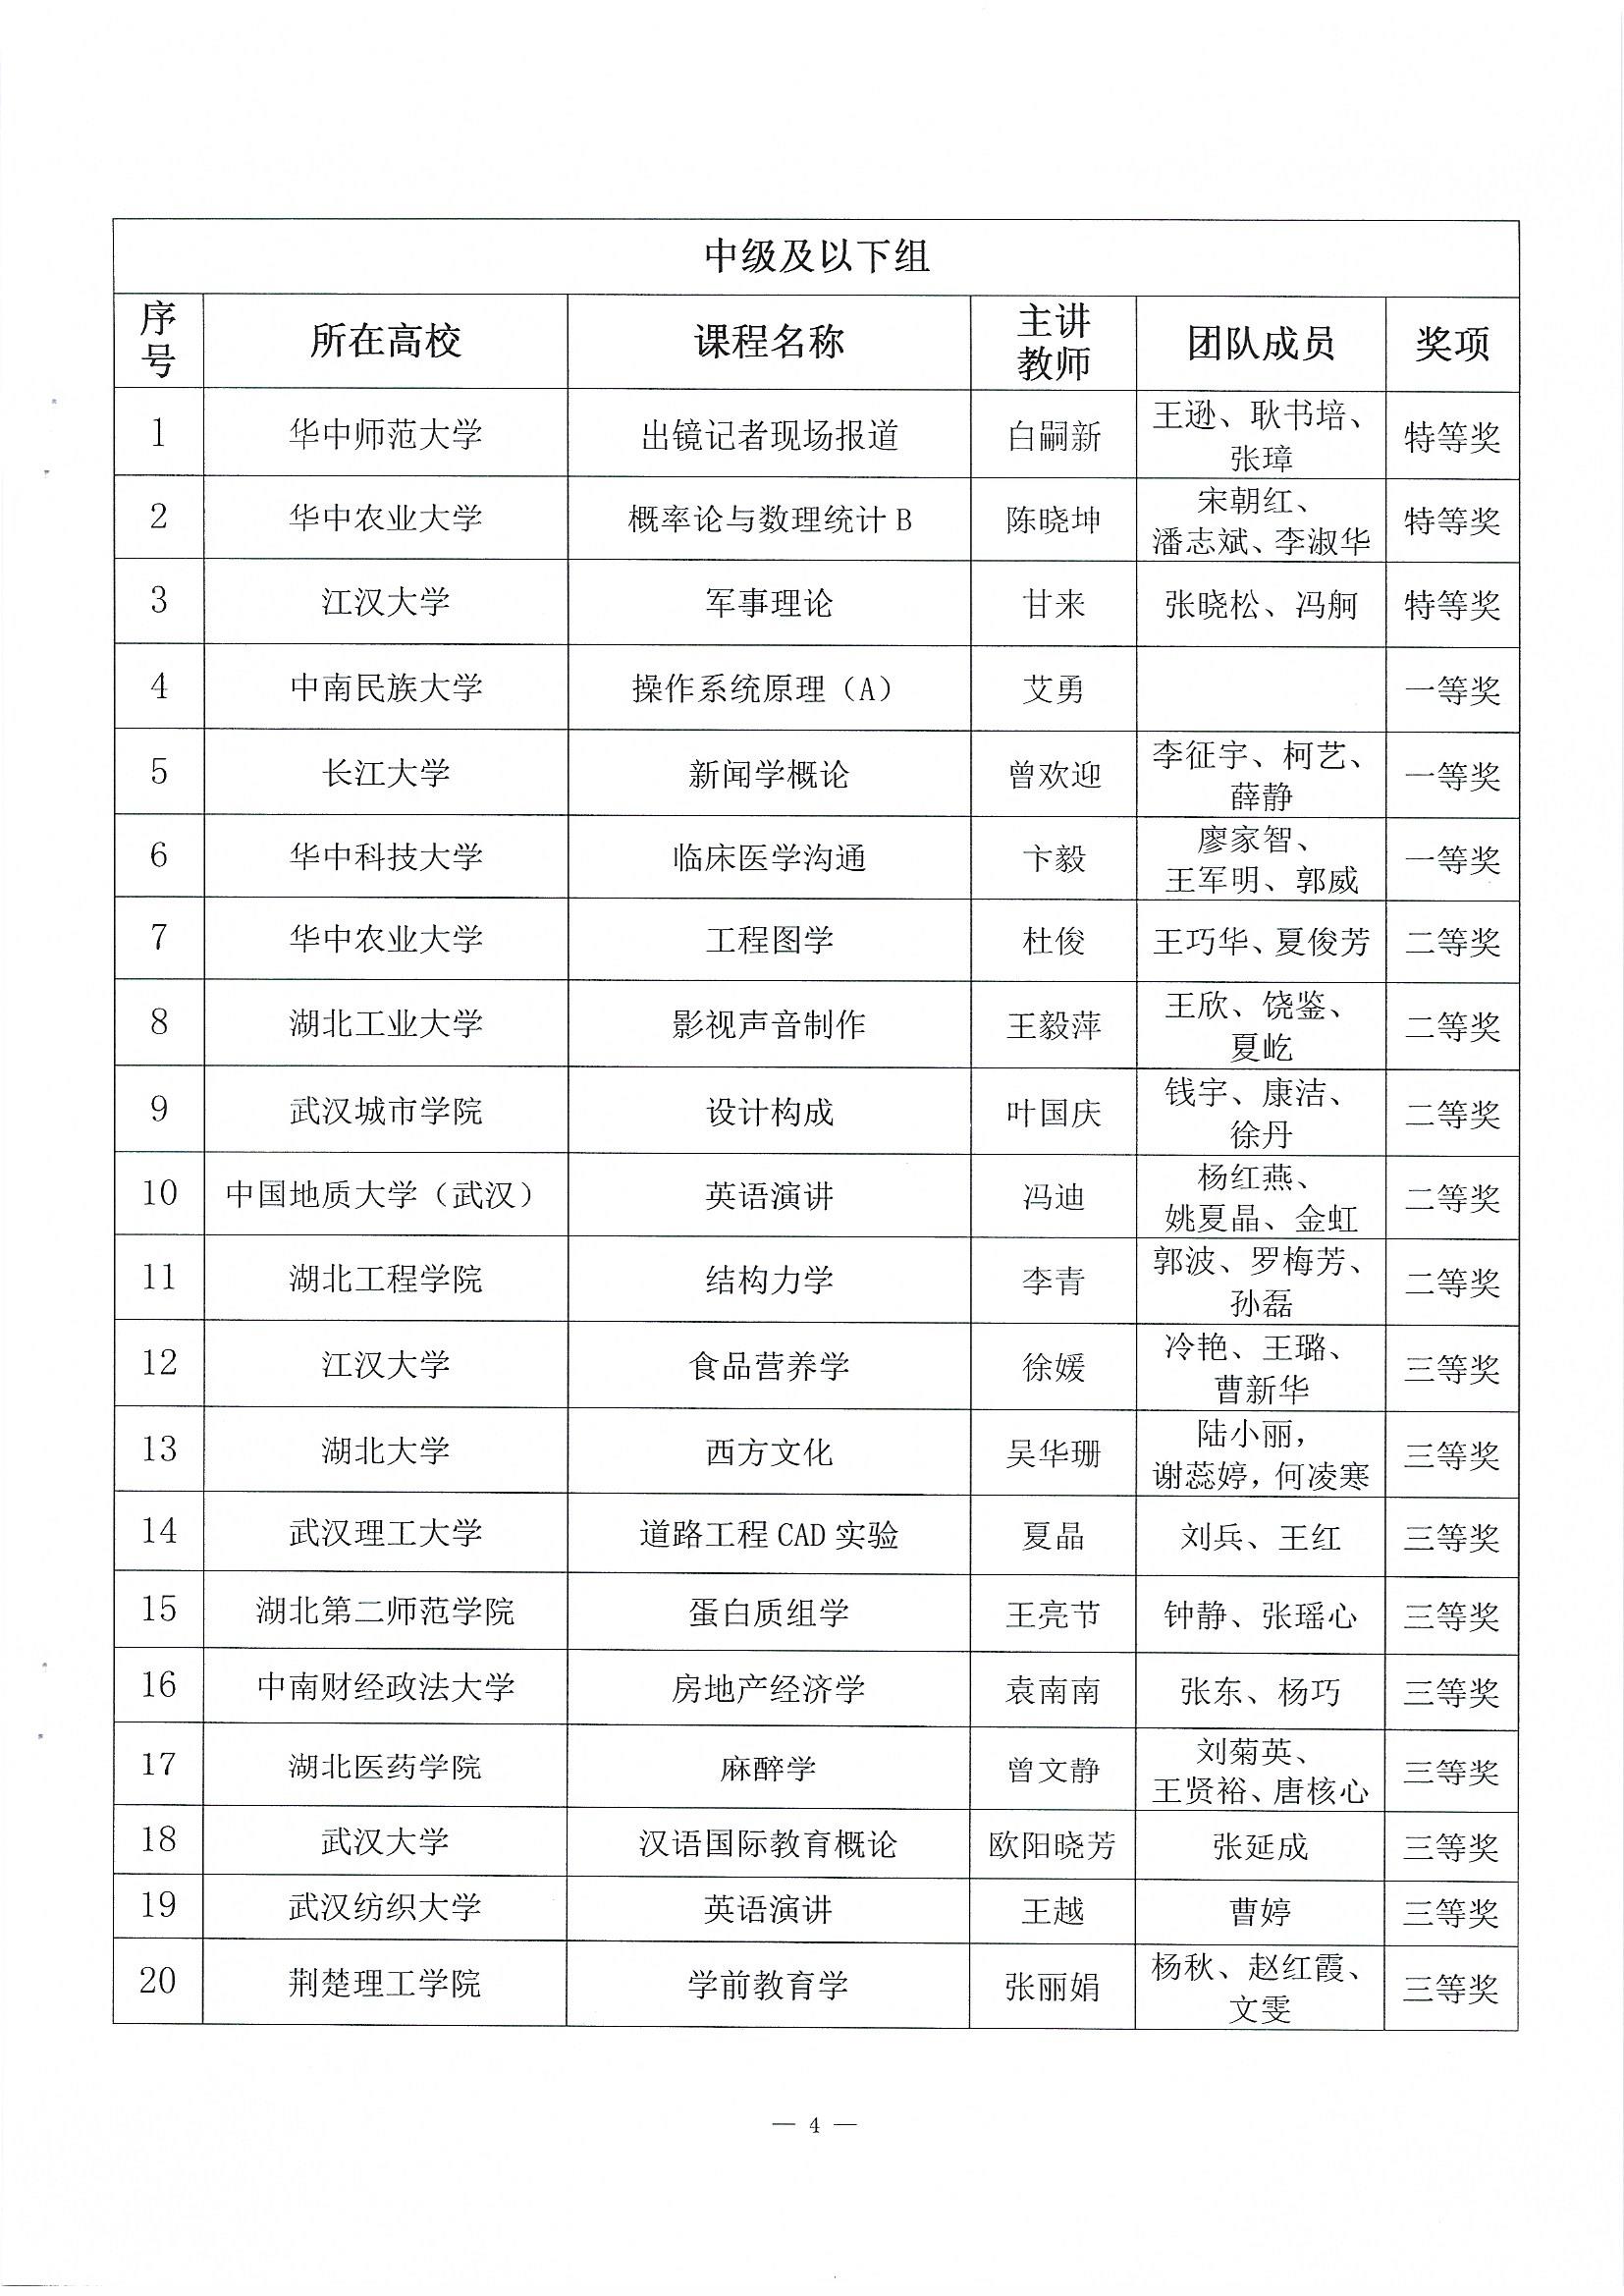 关于公布第二届湖北省高校教师教学创新大赛评审结果的通知(1)_页面_4.jpg